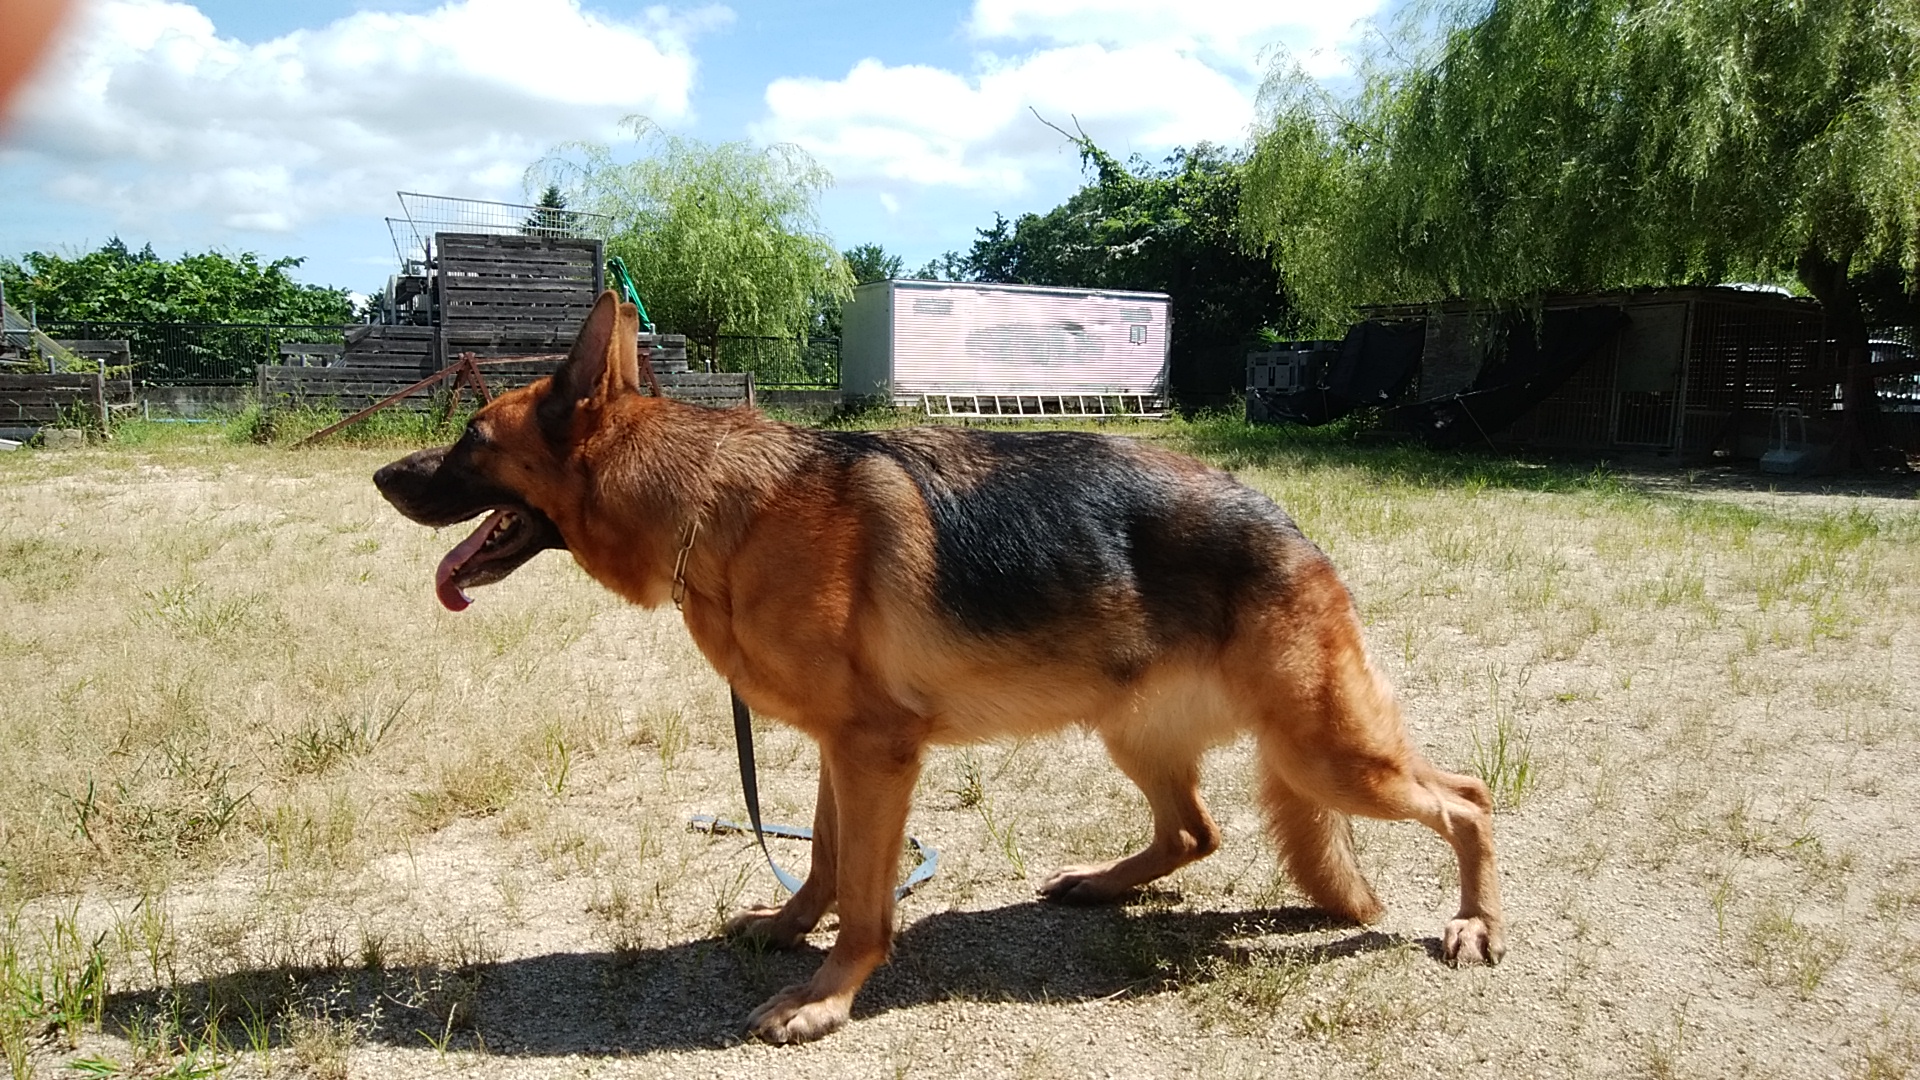 ドイツシェパード犬の仔犬がうまれました 滋賀山本家庭犬 警察犬訓練所 滋賀県湖南市 災害救助犬の育成 ドッグトレーニング 犬のしつけの出張訓練